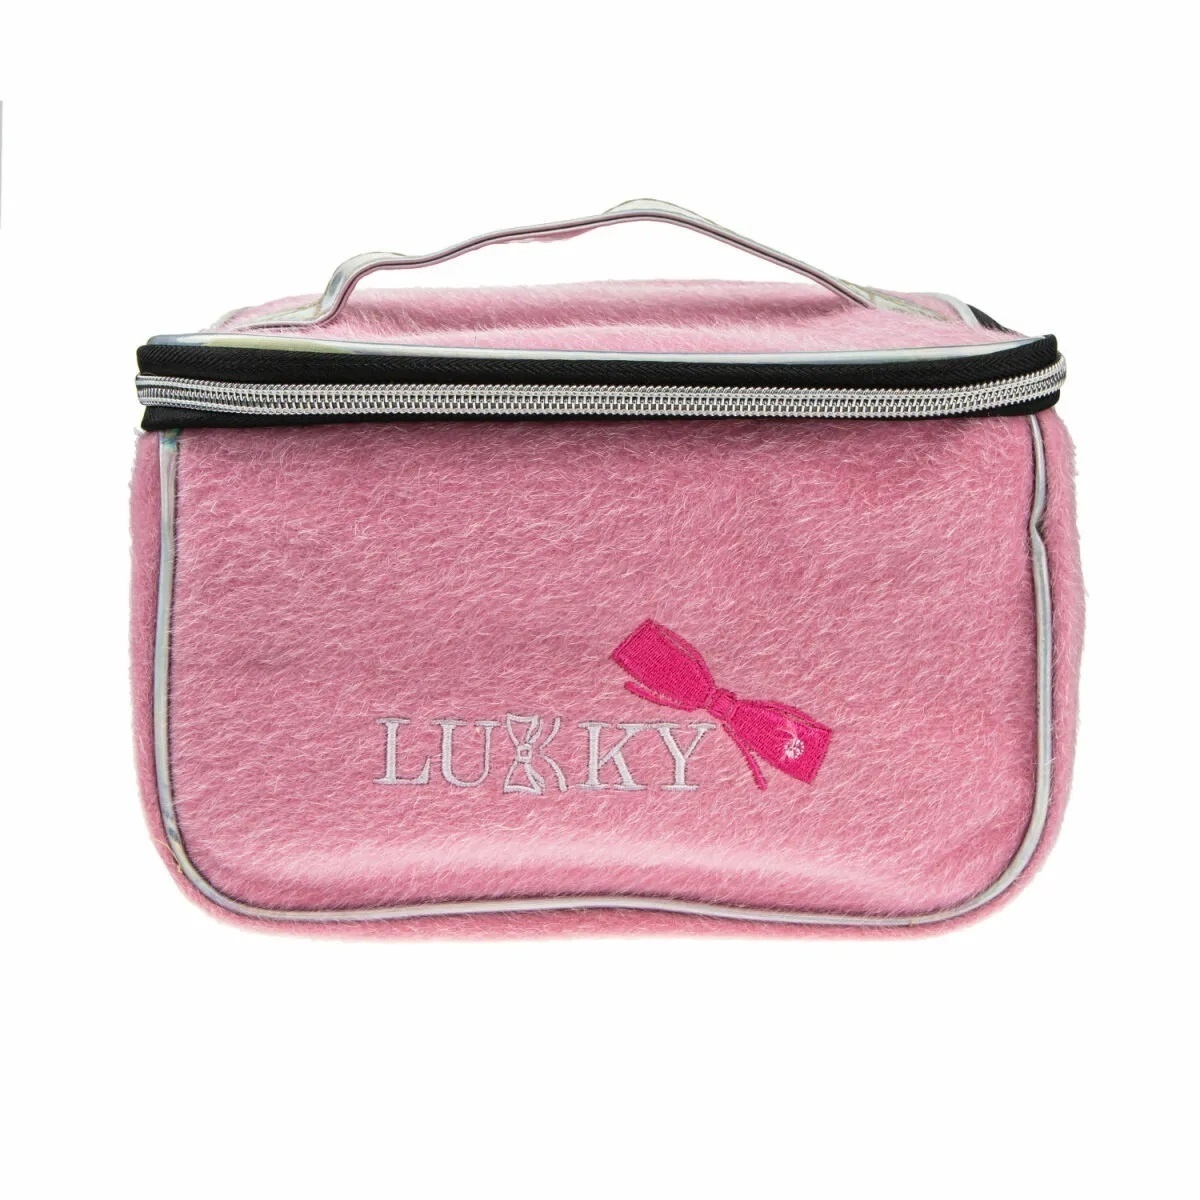 Lukky Т21413 Косметичка-чемоданчик с лого розовая 23*16*13см - Орск 